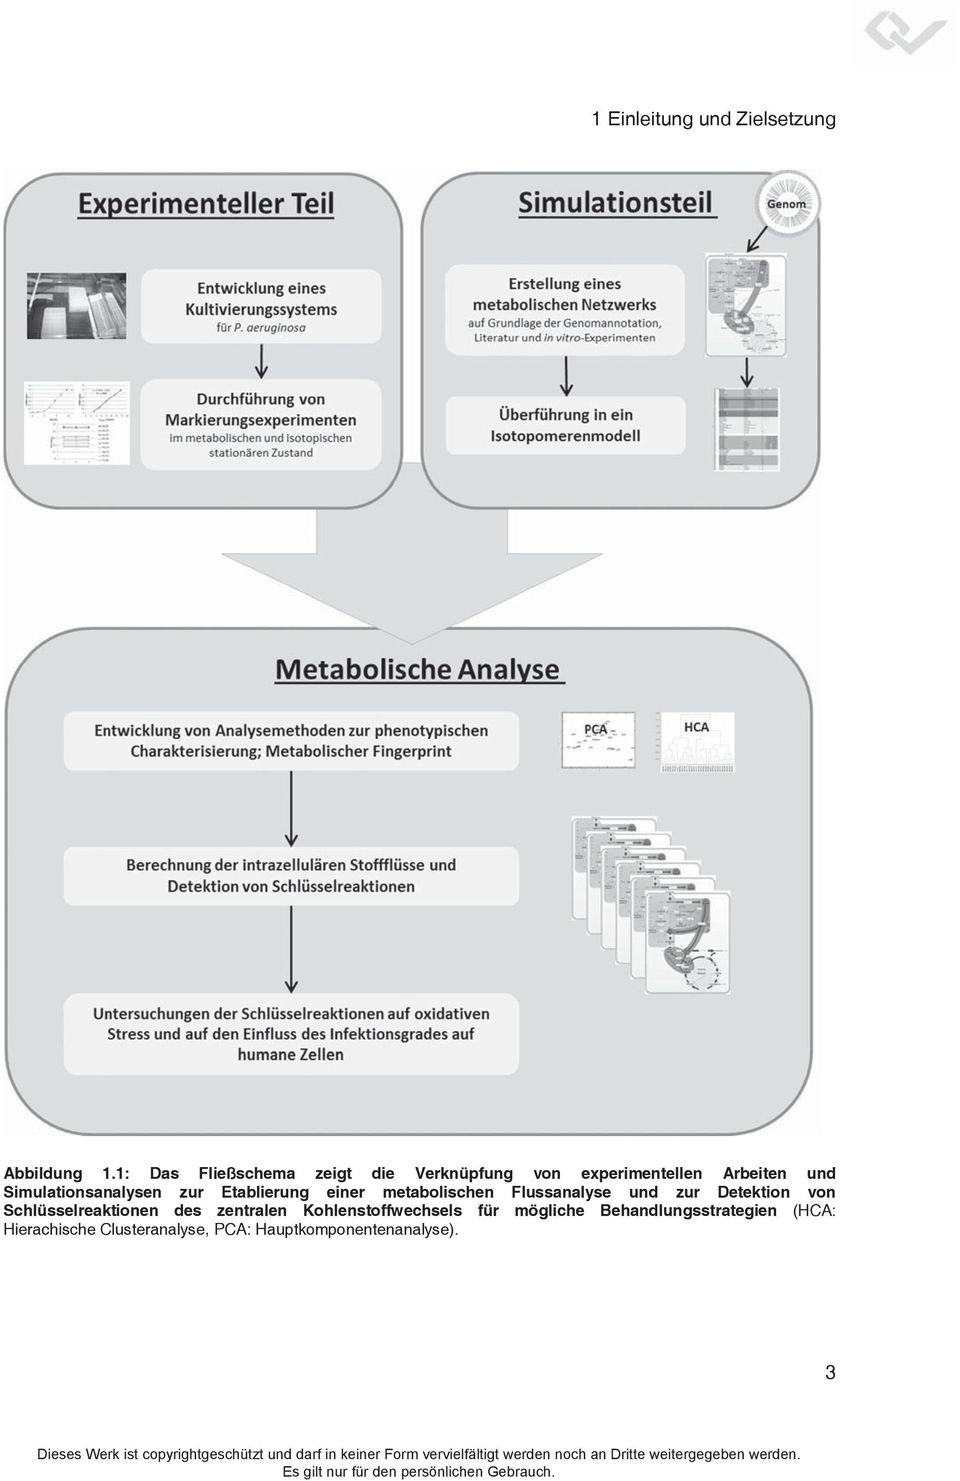 Simulationsanalysen zur Etablierung einer metabolischen Flussanalyse und zur Detektion von